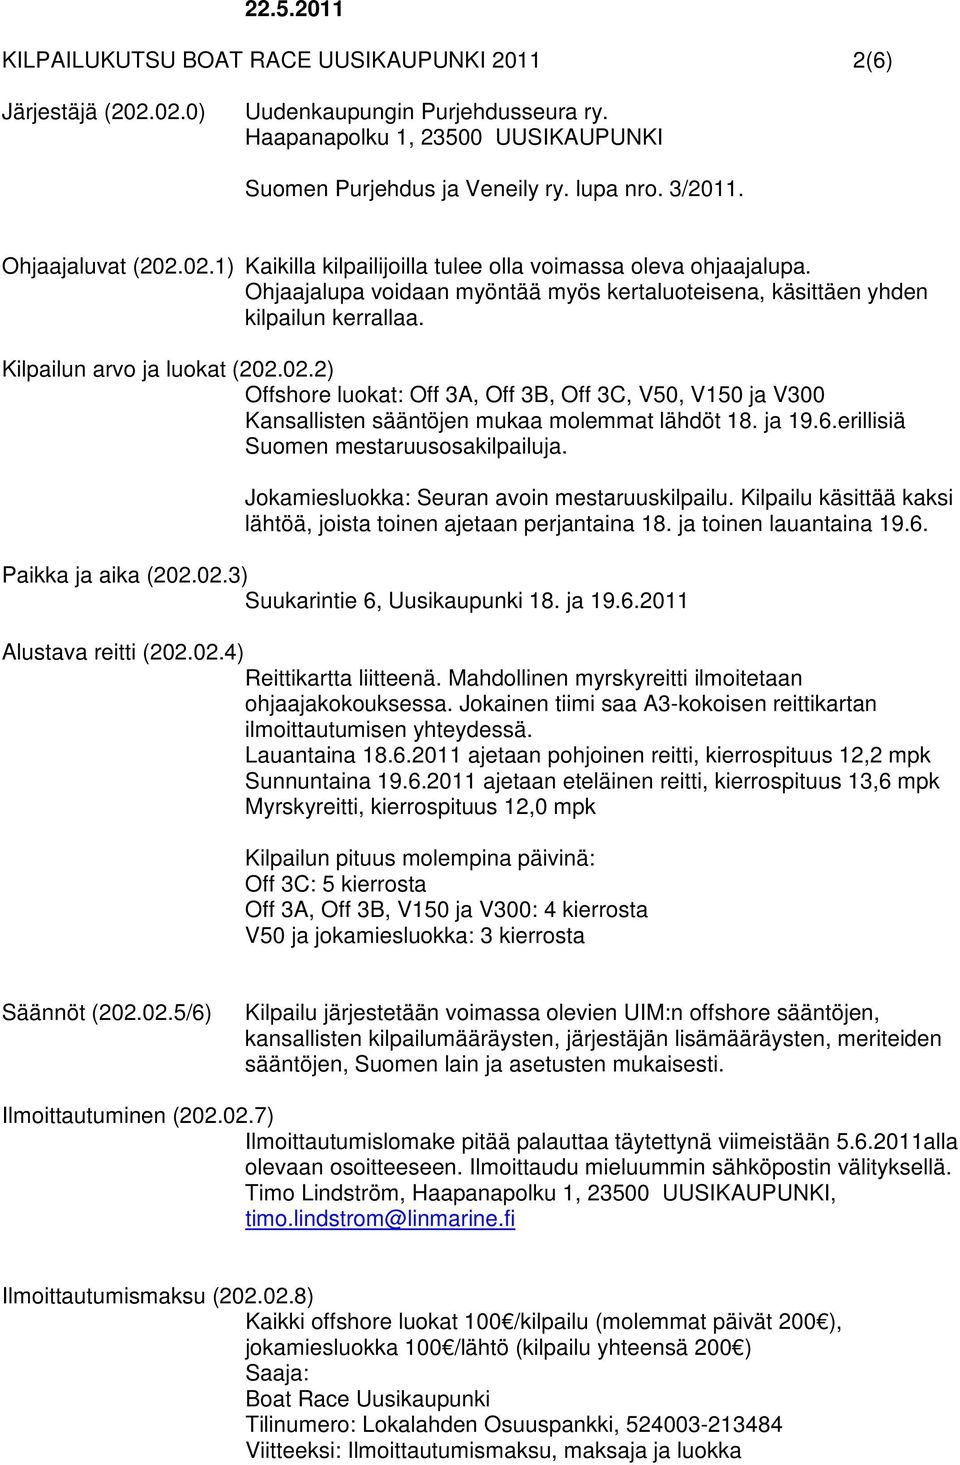 Kilpailun arvo ja luokat (202.02.2) Offshore luokat: Off 3A, Off 3B, Off 3C, V50, V150 ja V300 Kansallisten sääntöjen mukaa molemmat lähdöt 18. ja 19.6.erillisiä Suomen mestaruusosakilpailuja.